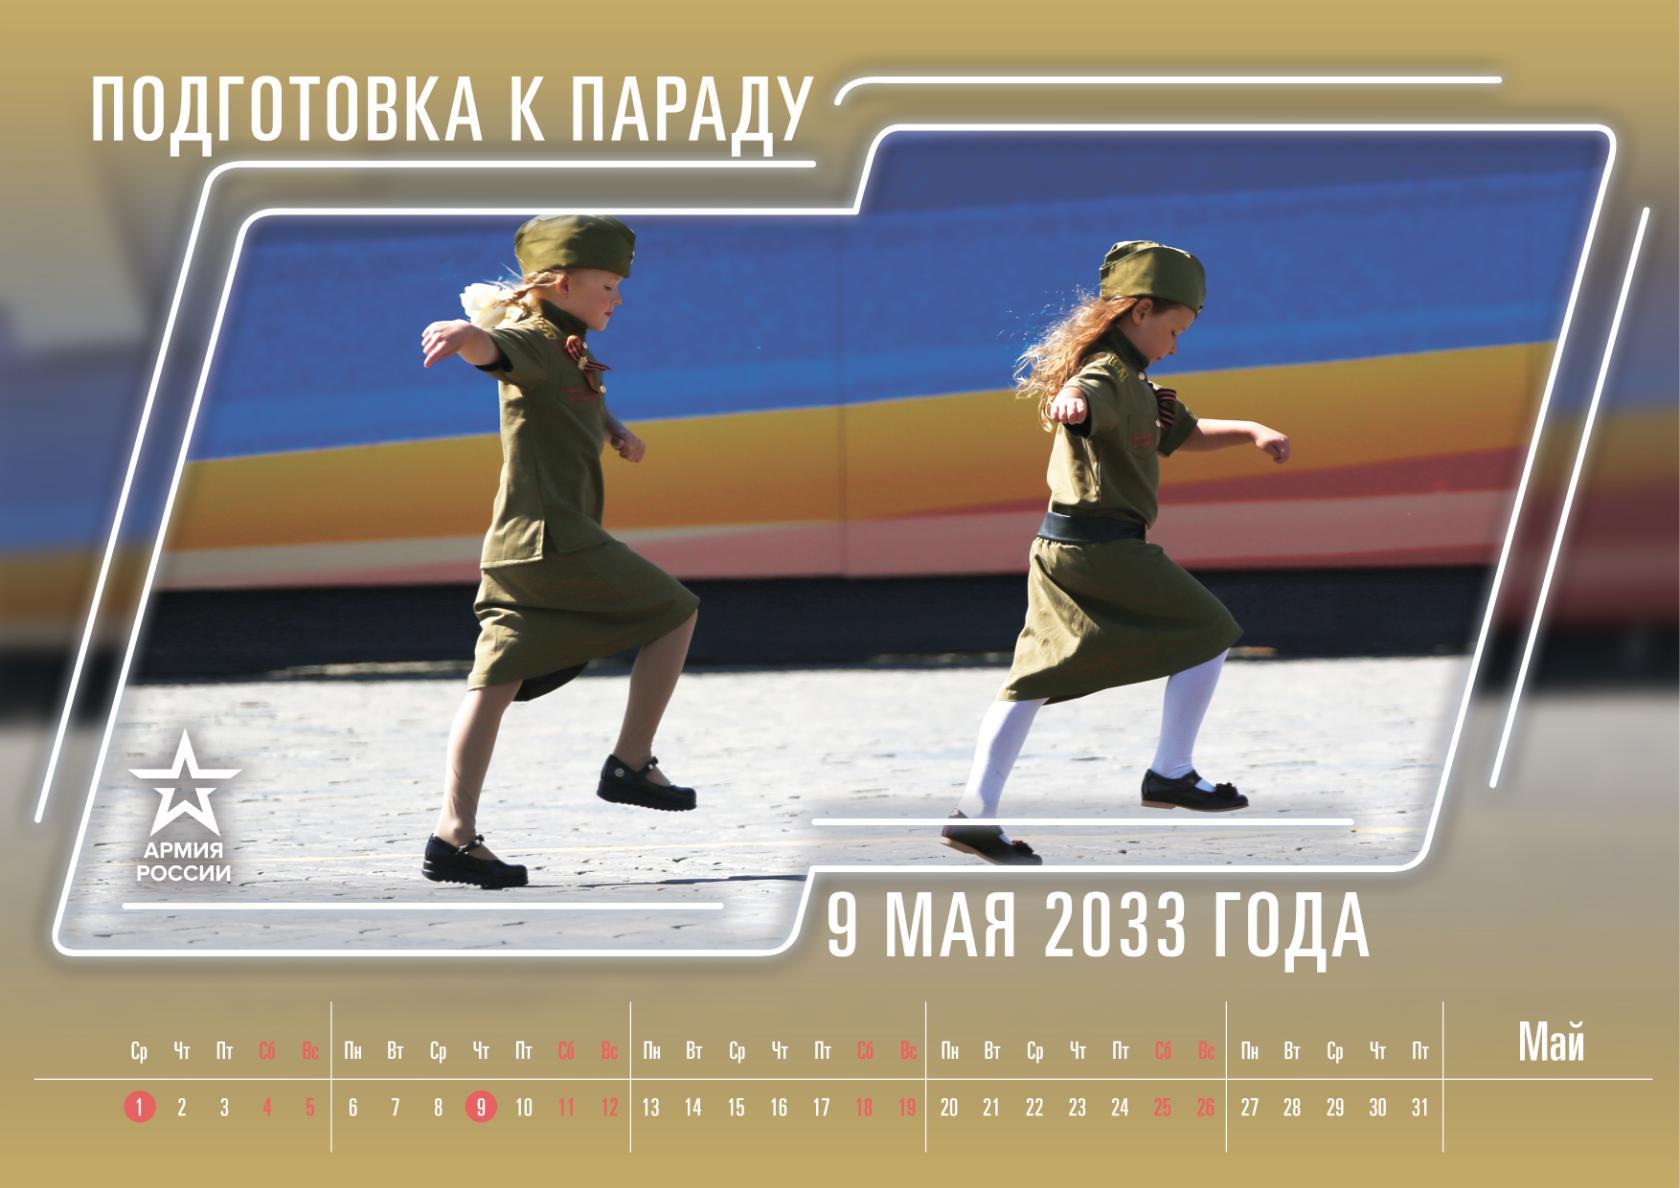 Минобороны выпустило календарь с армейским юмором на 2019 год 